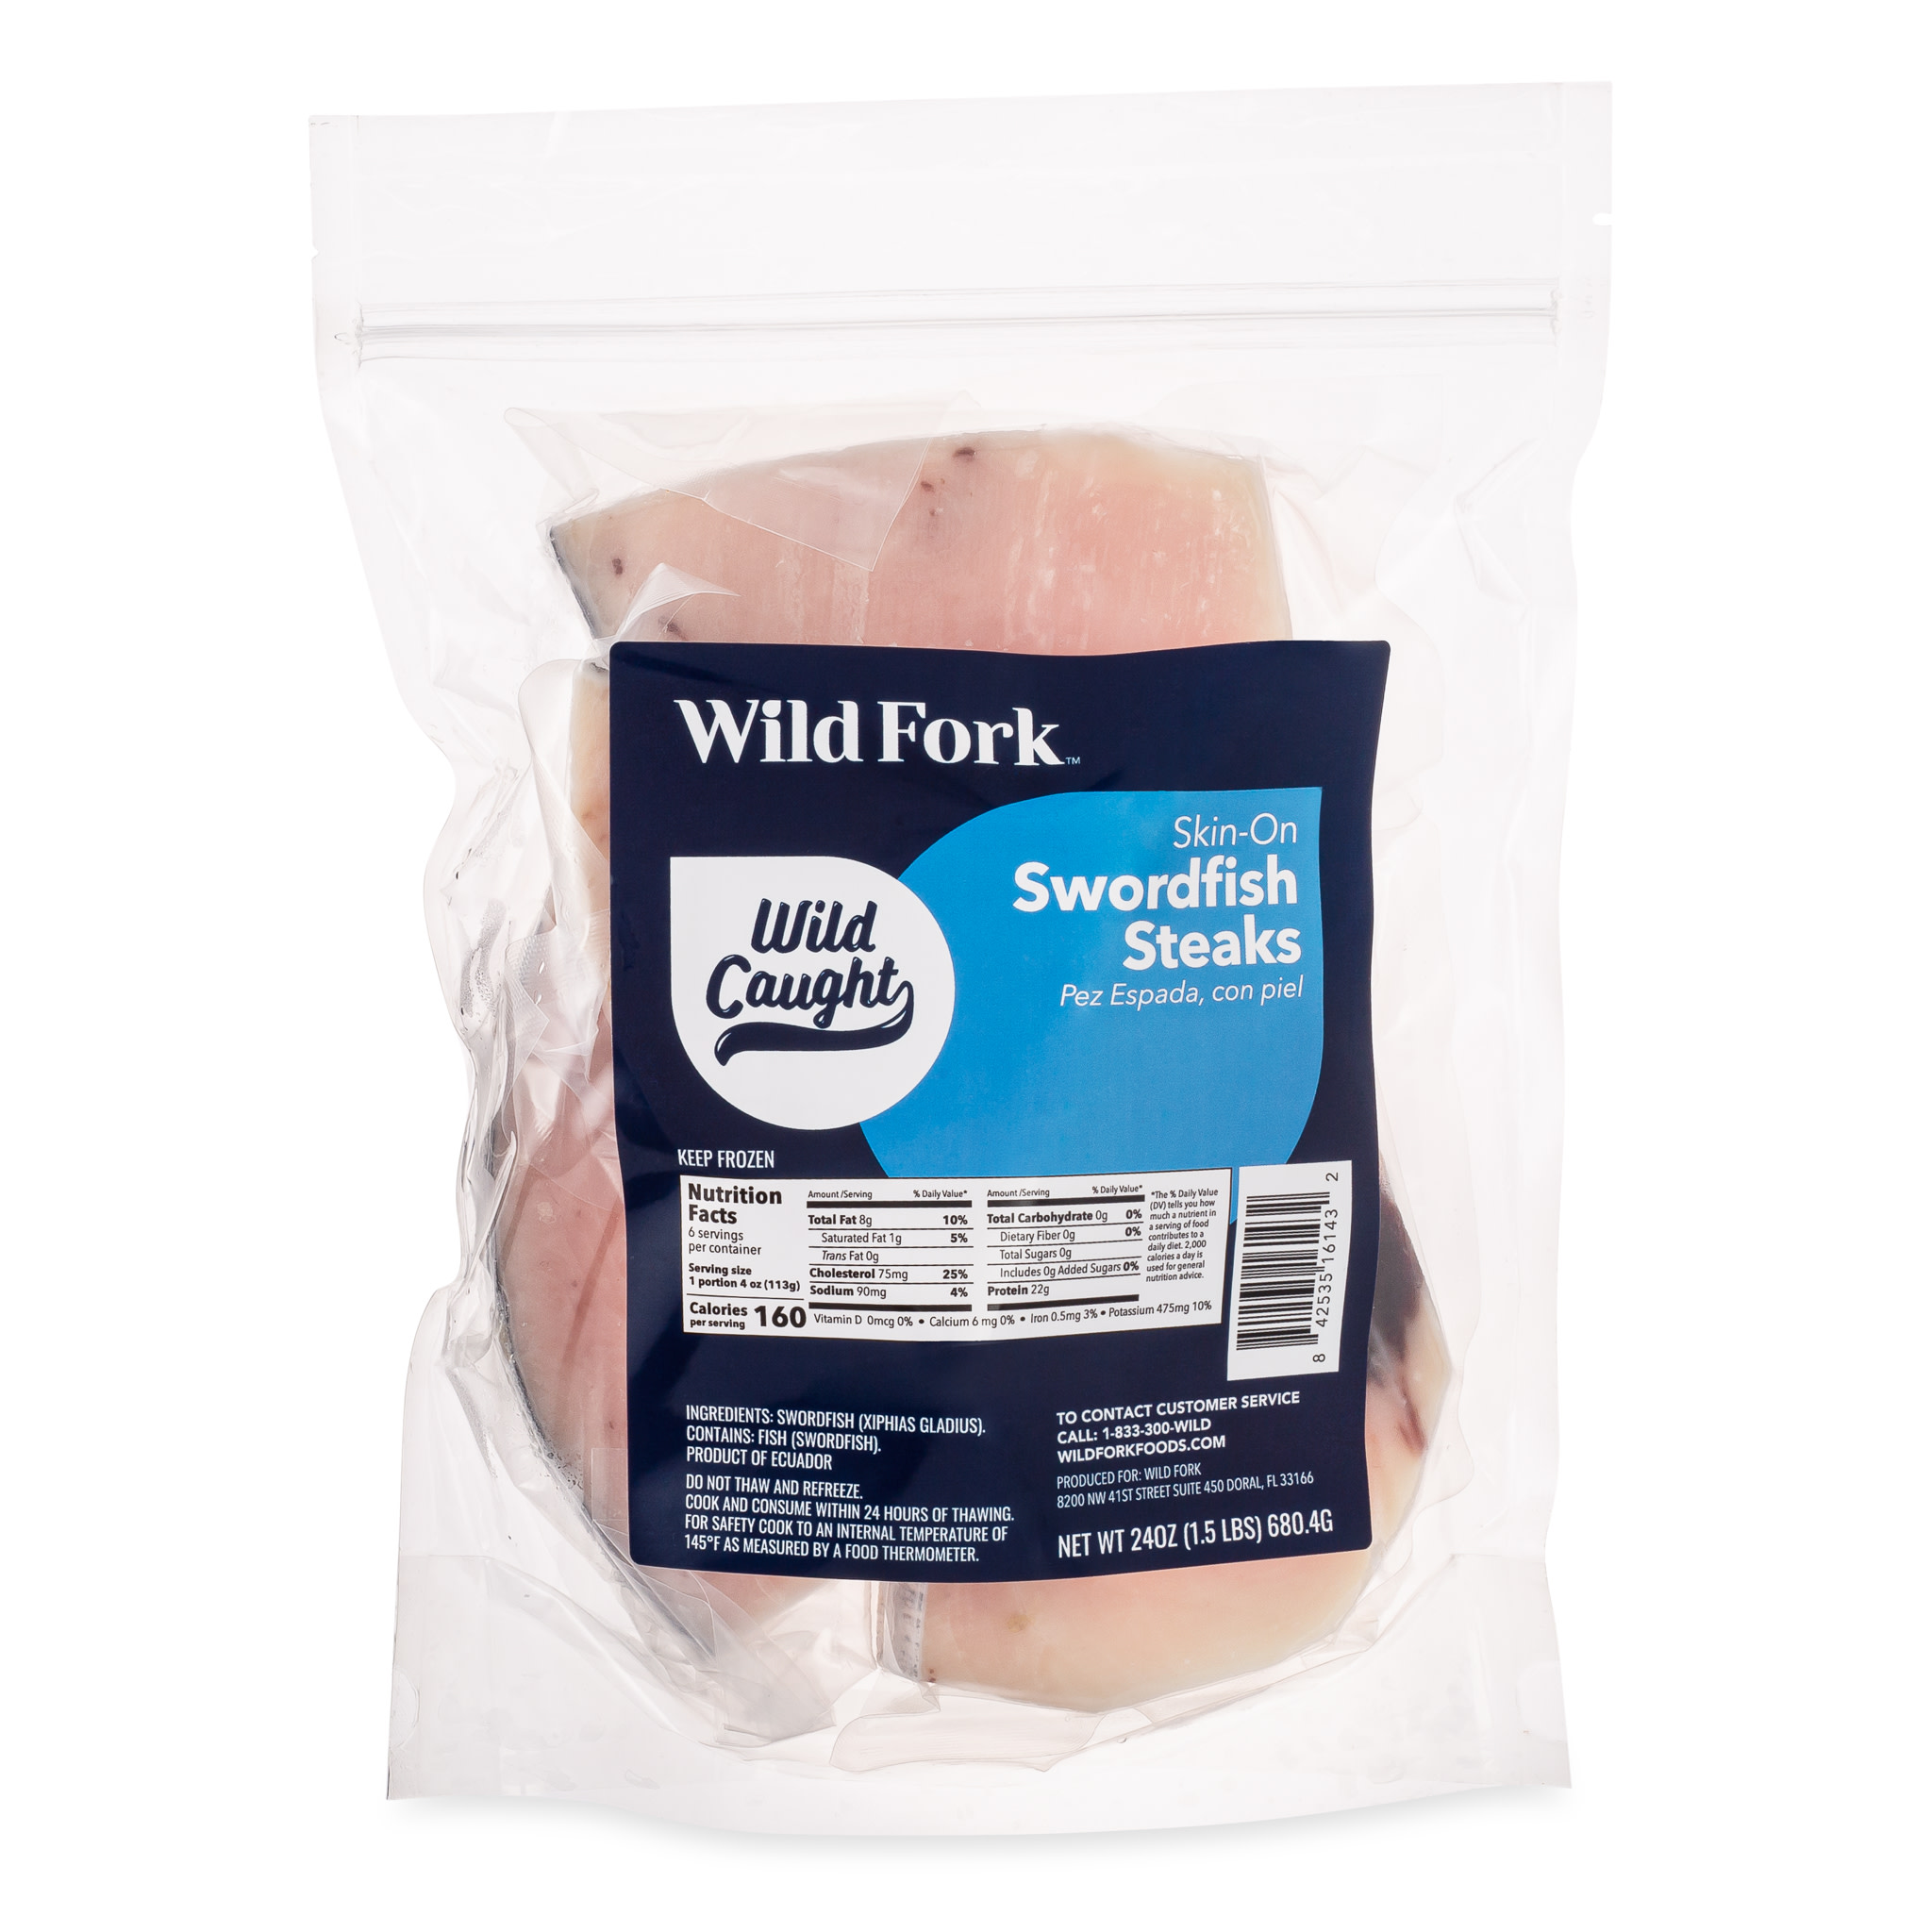 6143 WF PACKAGED Skin-On Swordfish Steaks Seafood